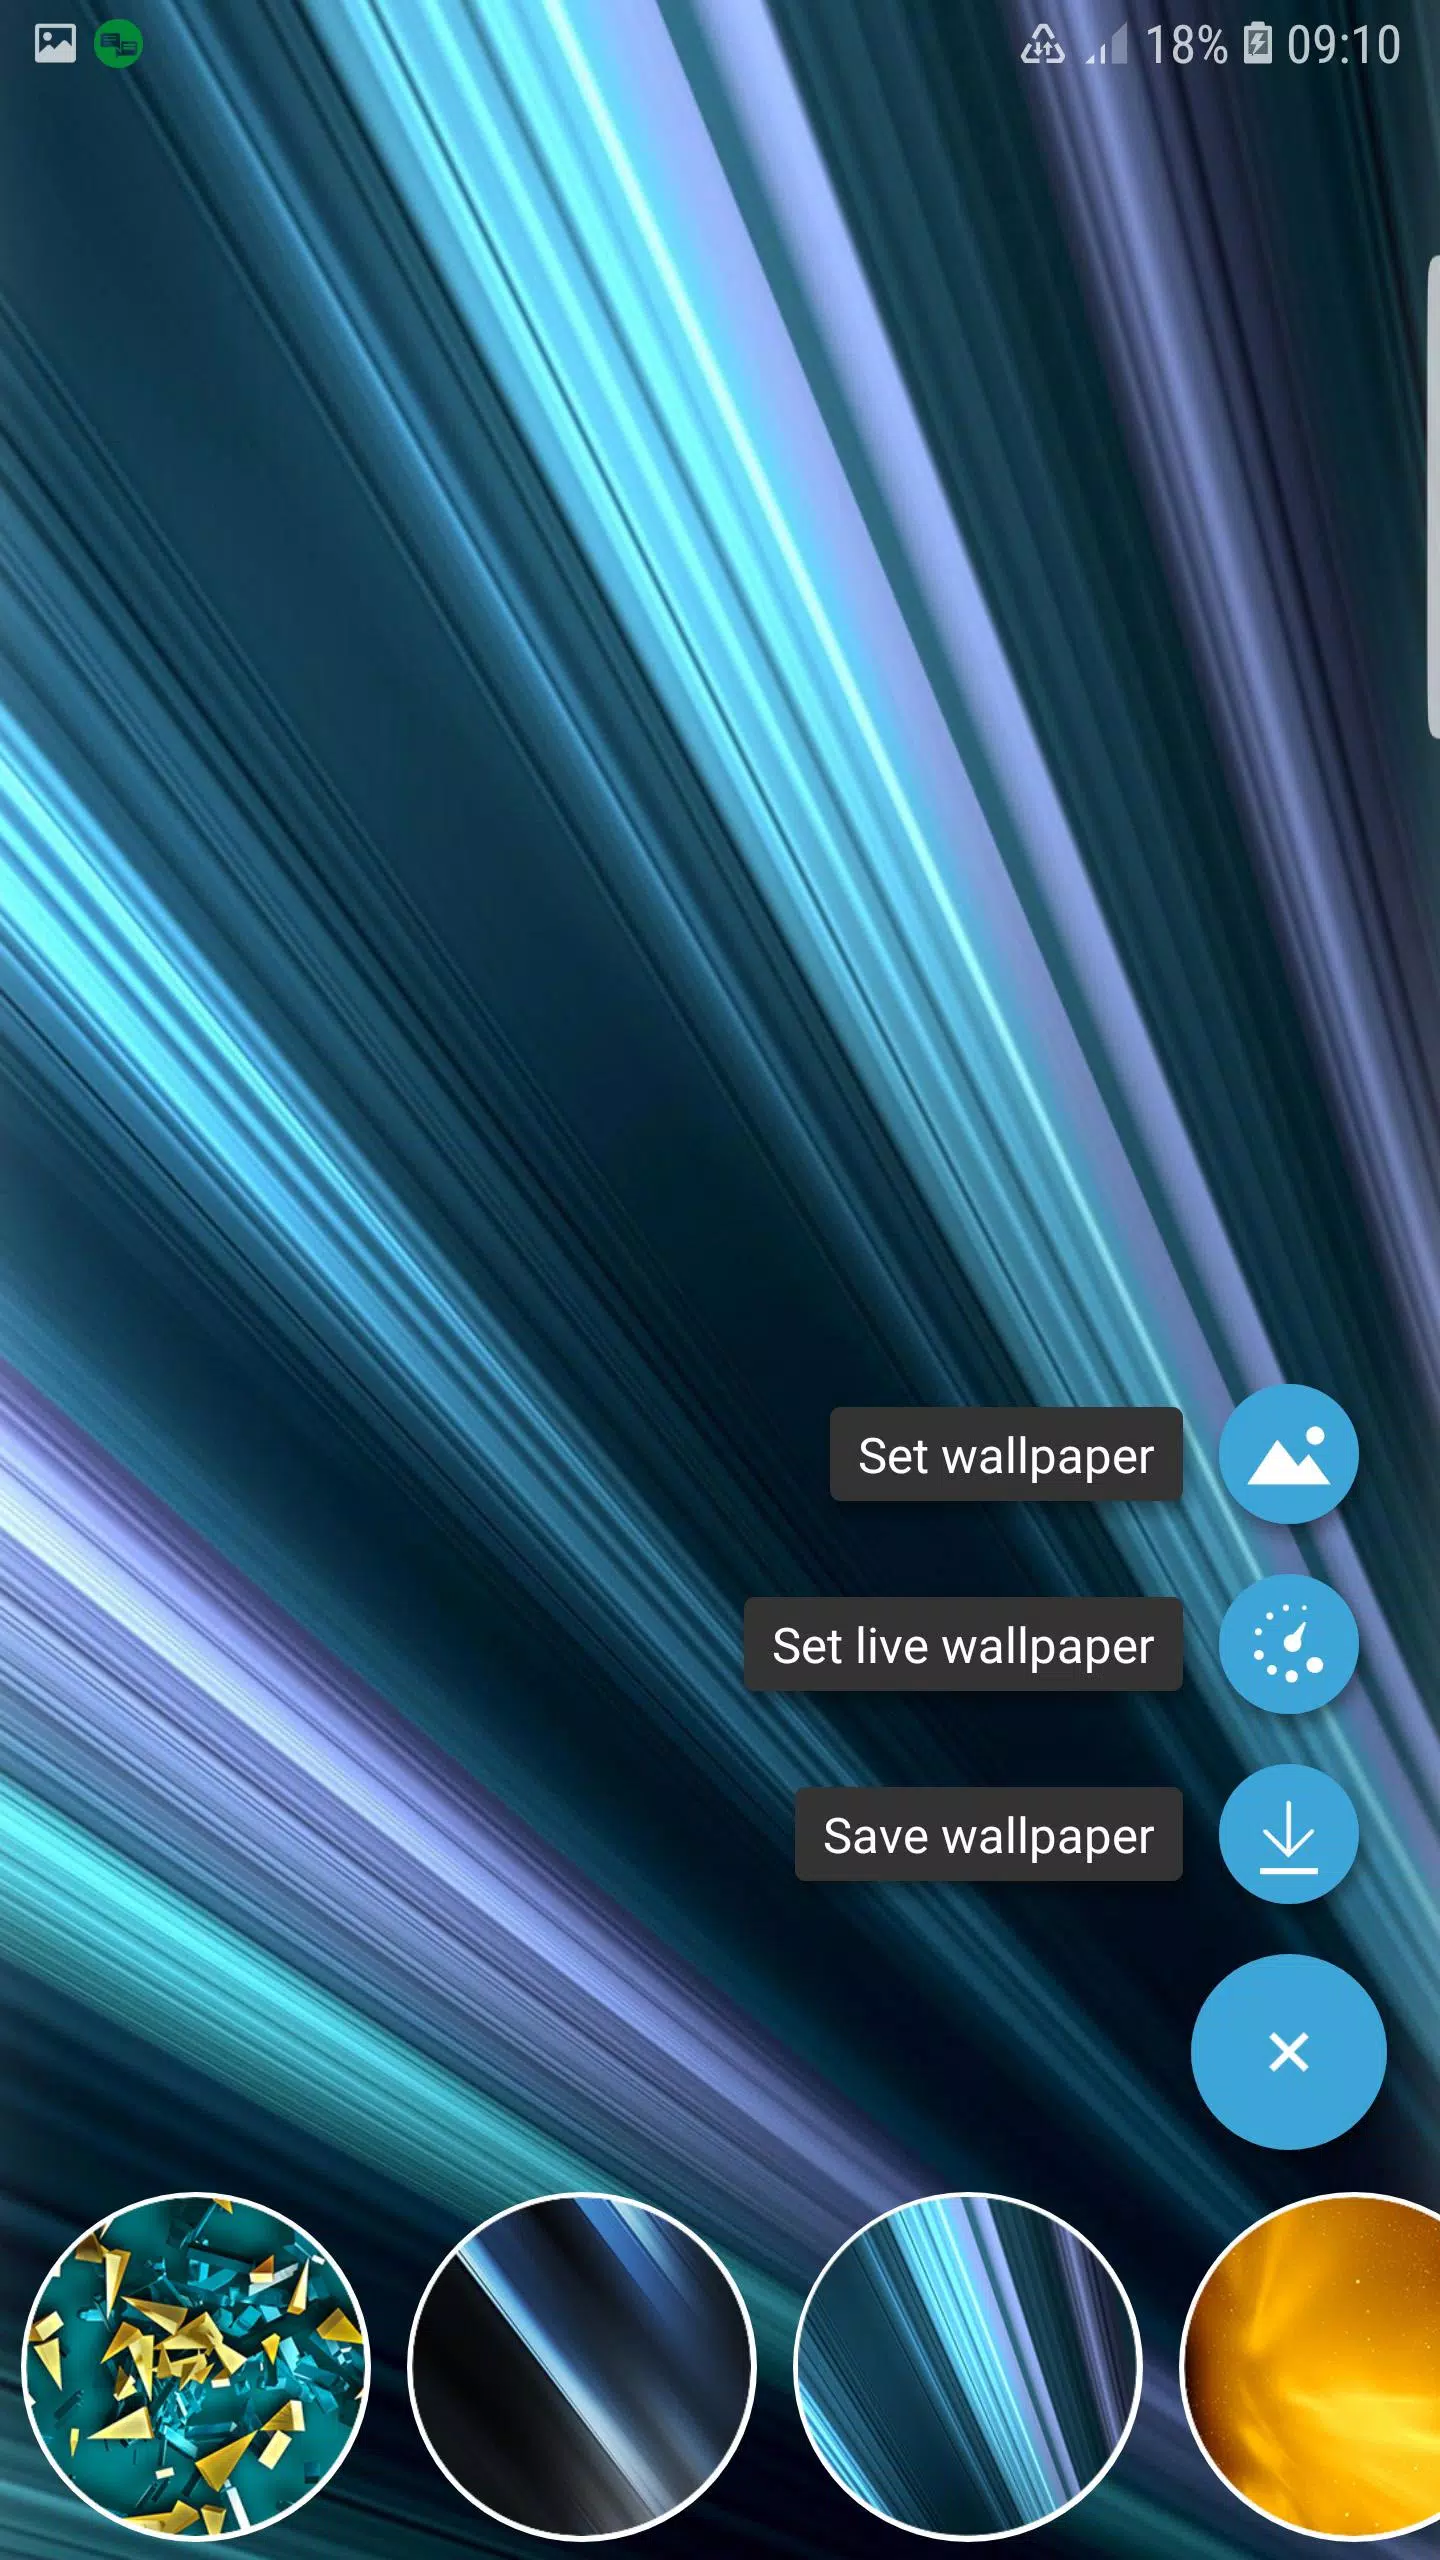 Android向けのxperia Xa Xz Xz2 Xz3 Wallpaper Apkをダウンロードしましょう